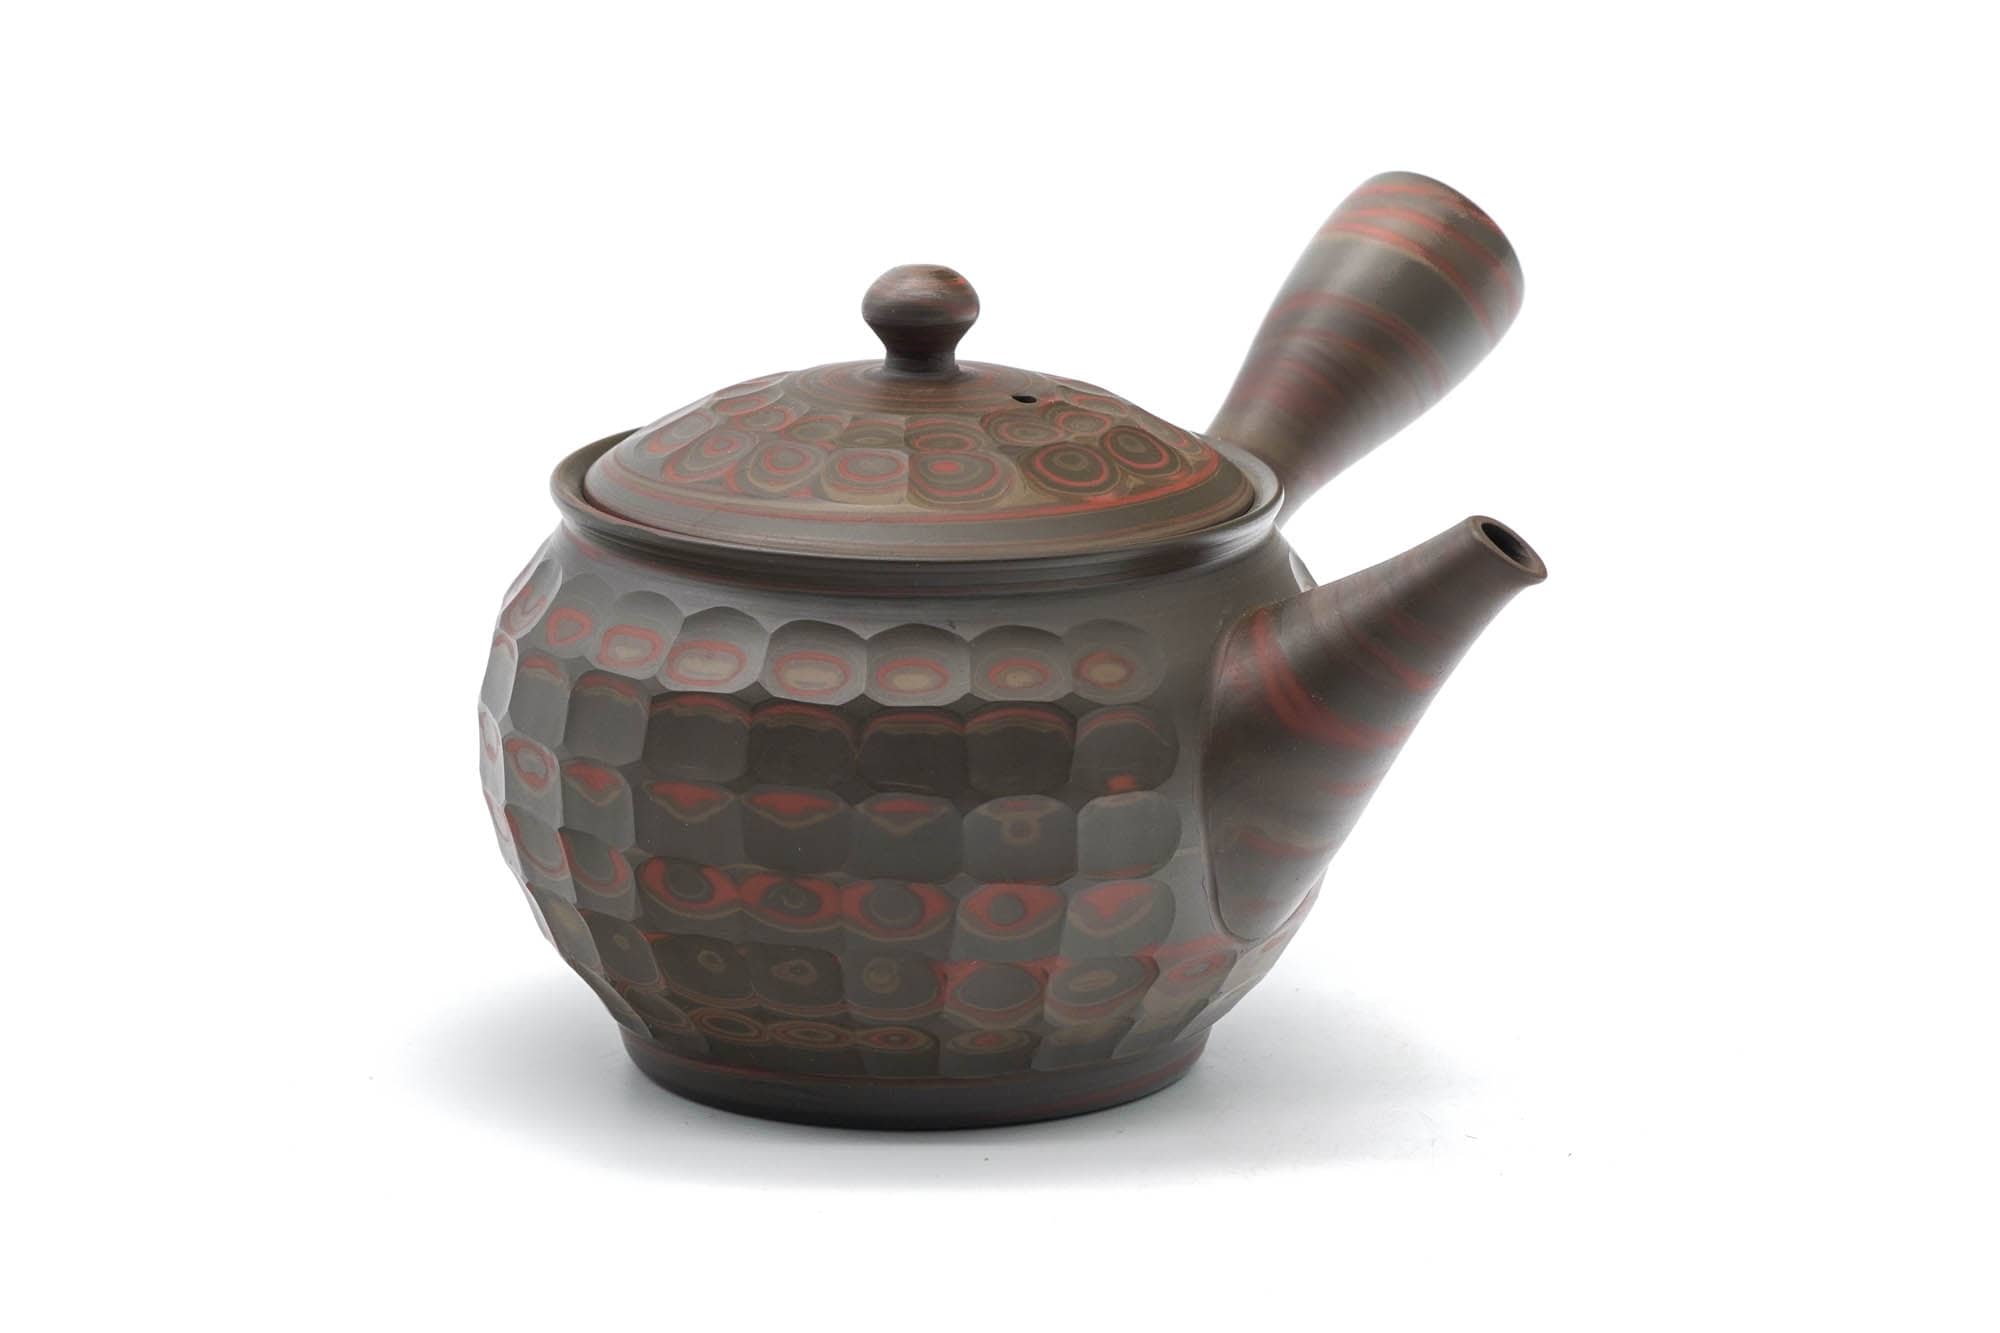 Comprar teteras Japonesas Kyusu originales de calidad - Tienda de té